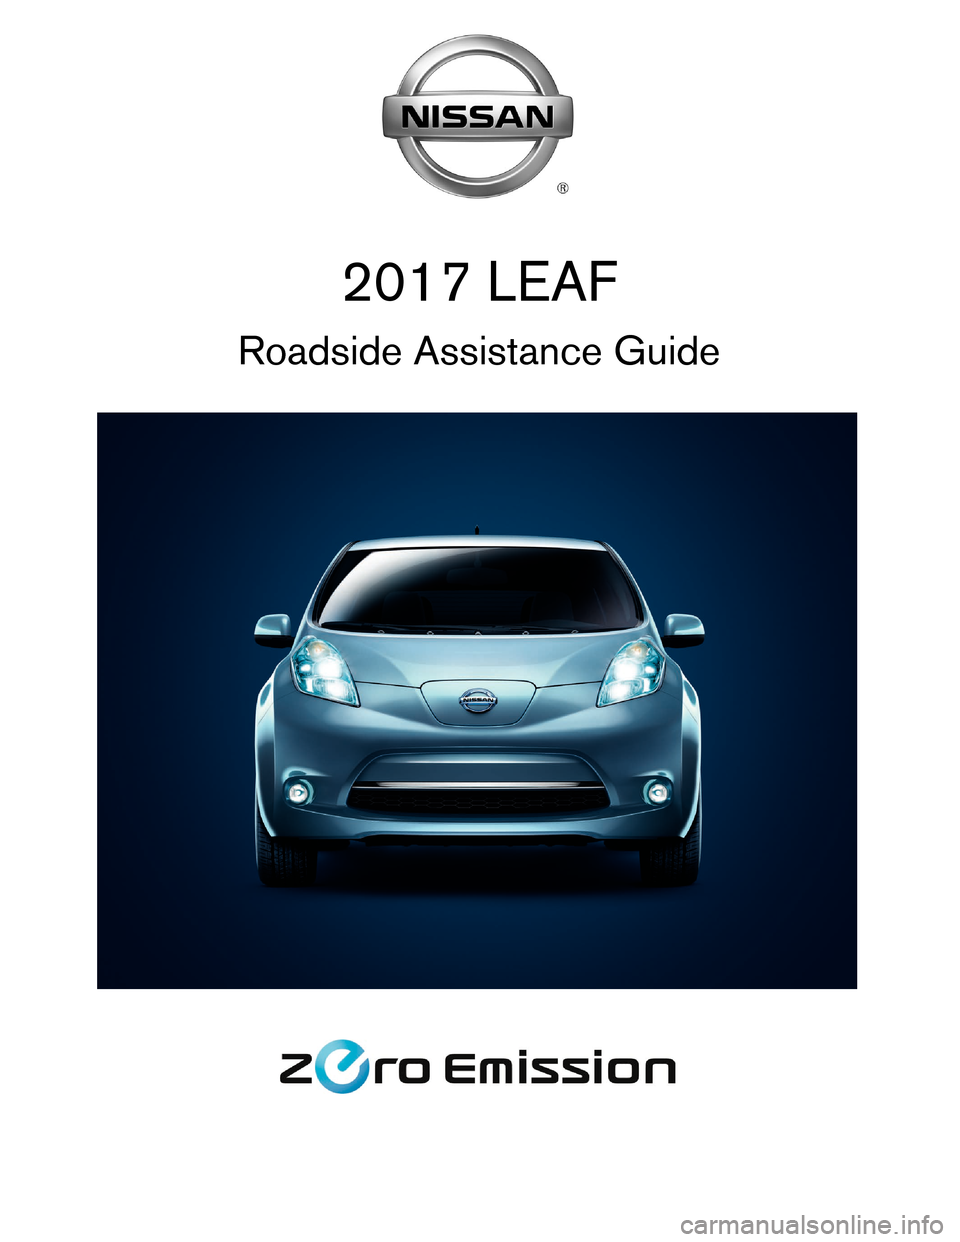 NISSAN LEAF 2017 1.G Roadside Assistance Guide 2017 LEAF
Roadside Assistance Guide    